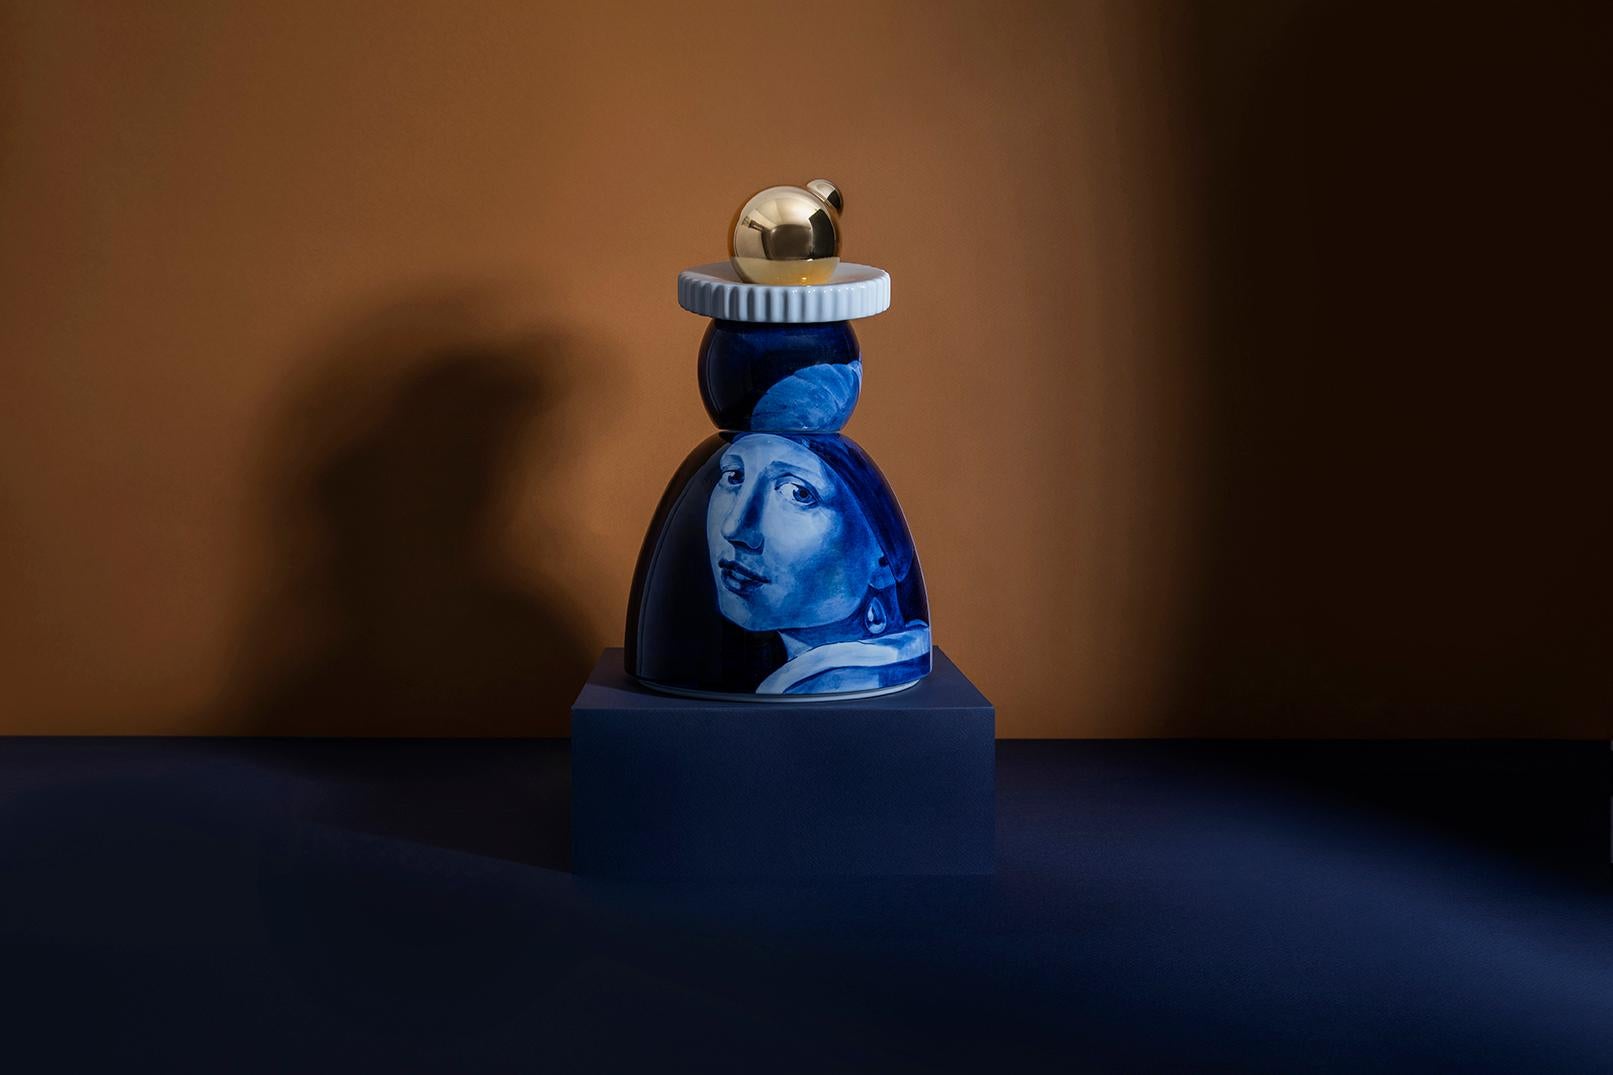 Grande figurine faite à la main avec une peinture en bleu de Delft représentant la jeune fille à l'oreille de perle de Vermeer. 
 
Cette année, Royal Delft présente les objets de collection Vermeer by Royal Delft, qui mettent le maître du 17e siècle